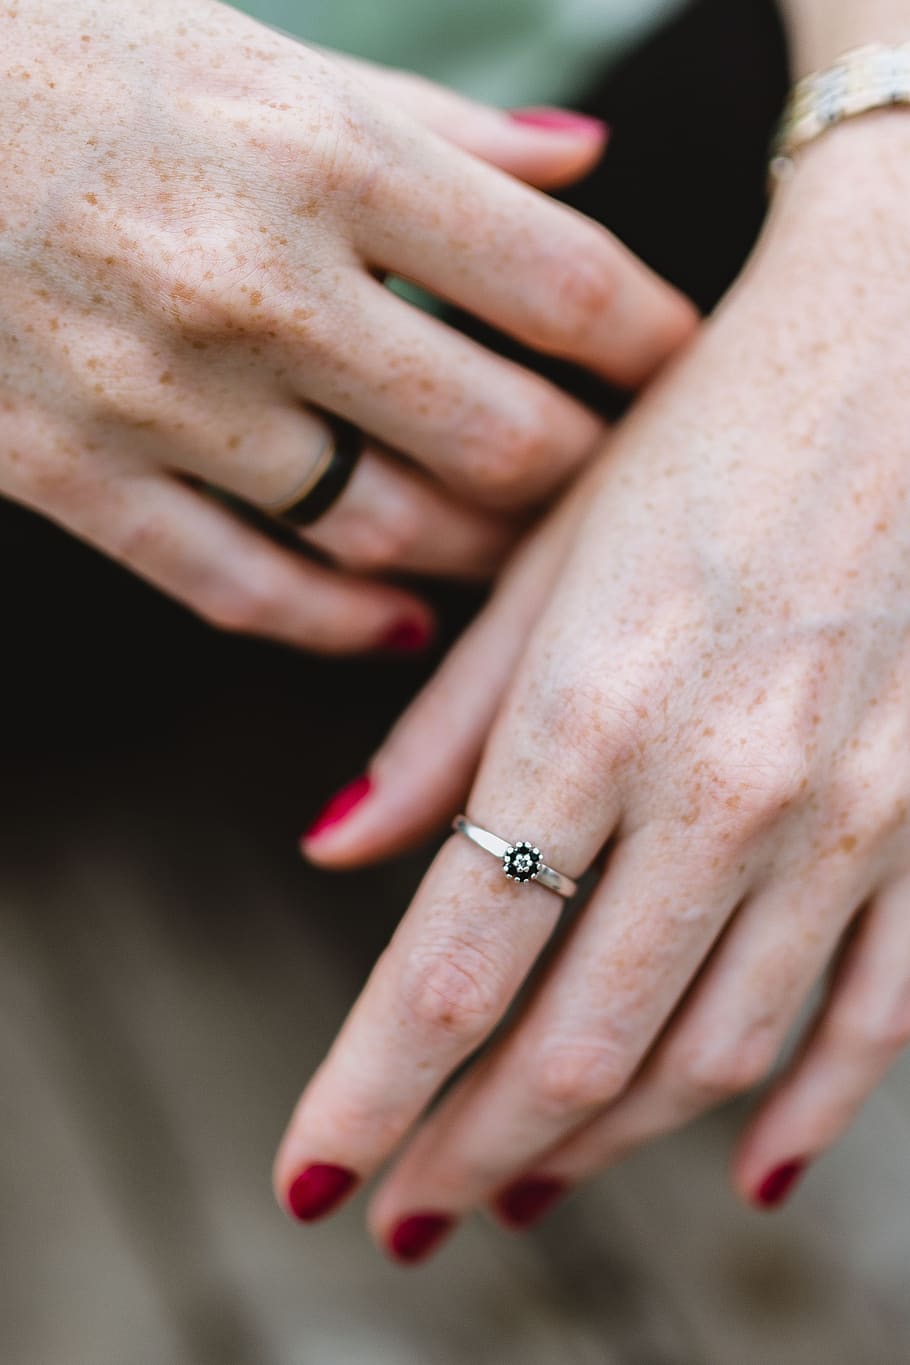 feminino, mulher, mãos, joias, anel, sardas, unhas vermelhas, manicure, Detalhe, mão humana